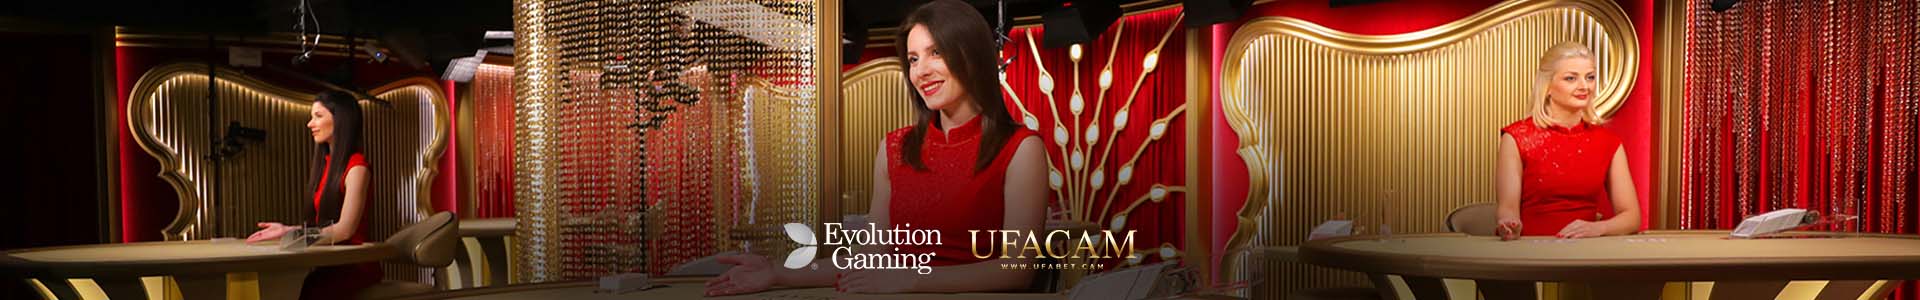 Evolution หรือ EVO Casino สุดยอดคาสิโนออนไลน์จากยุโรป